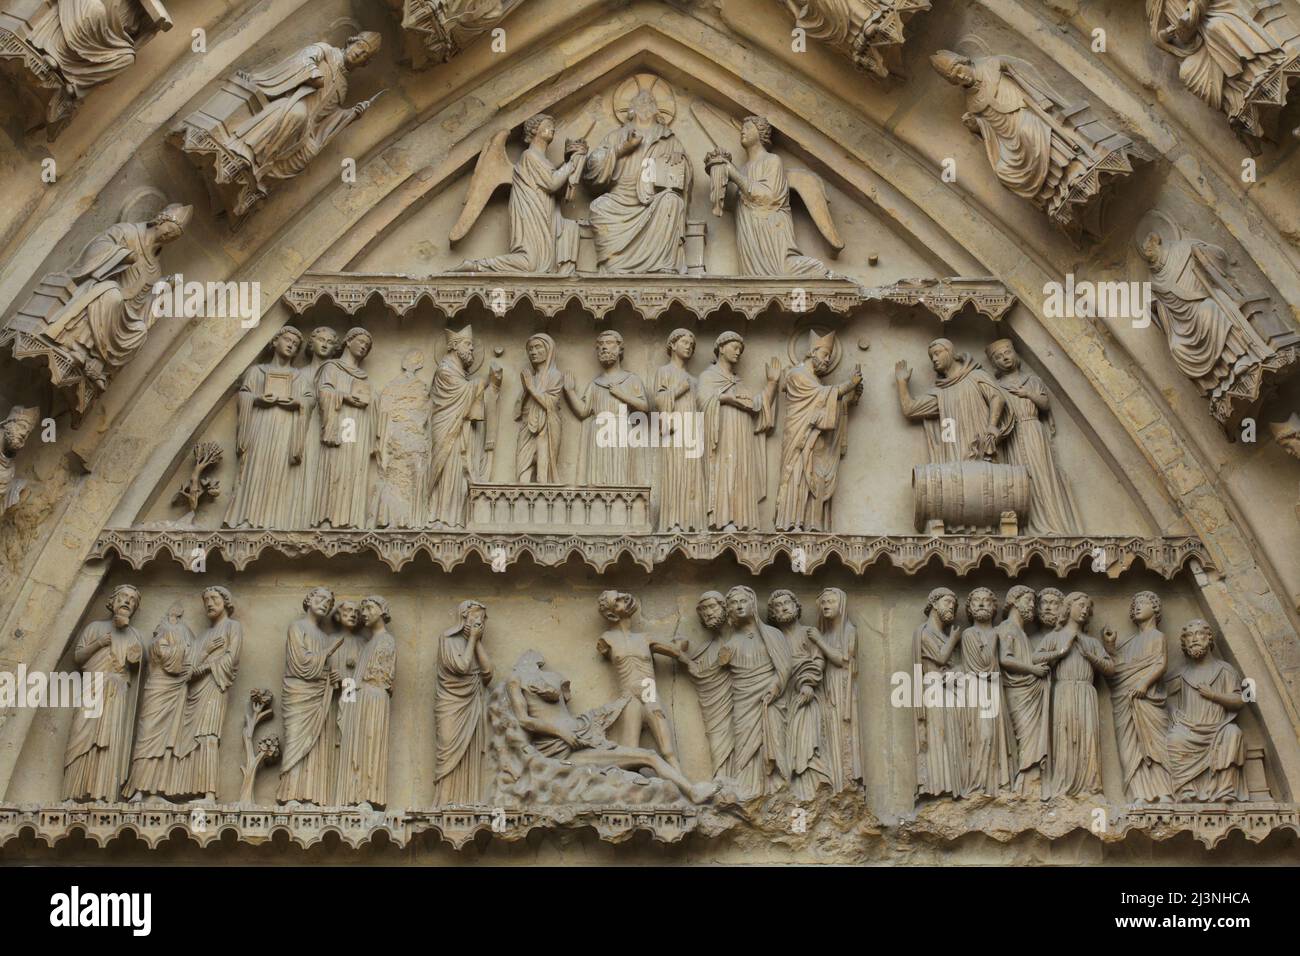 Miracles de Saint Remigius de Reims (niveau supérieur) et l'histoire biblique de Job (niveau inférieur) représentés dans le tympan du portail central de la façade nord de la cathédrale de Reims (Cathédrale notre-Dame de Reims) à Reims, France. Banque D'Images